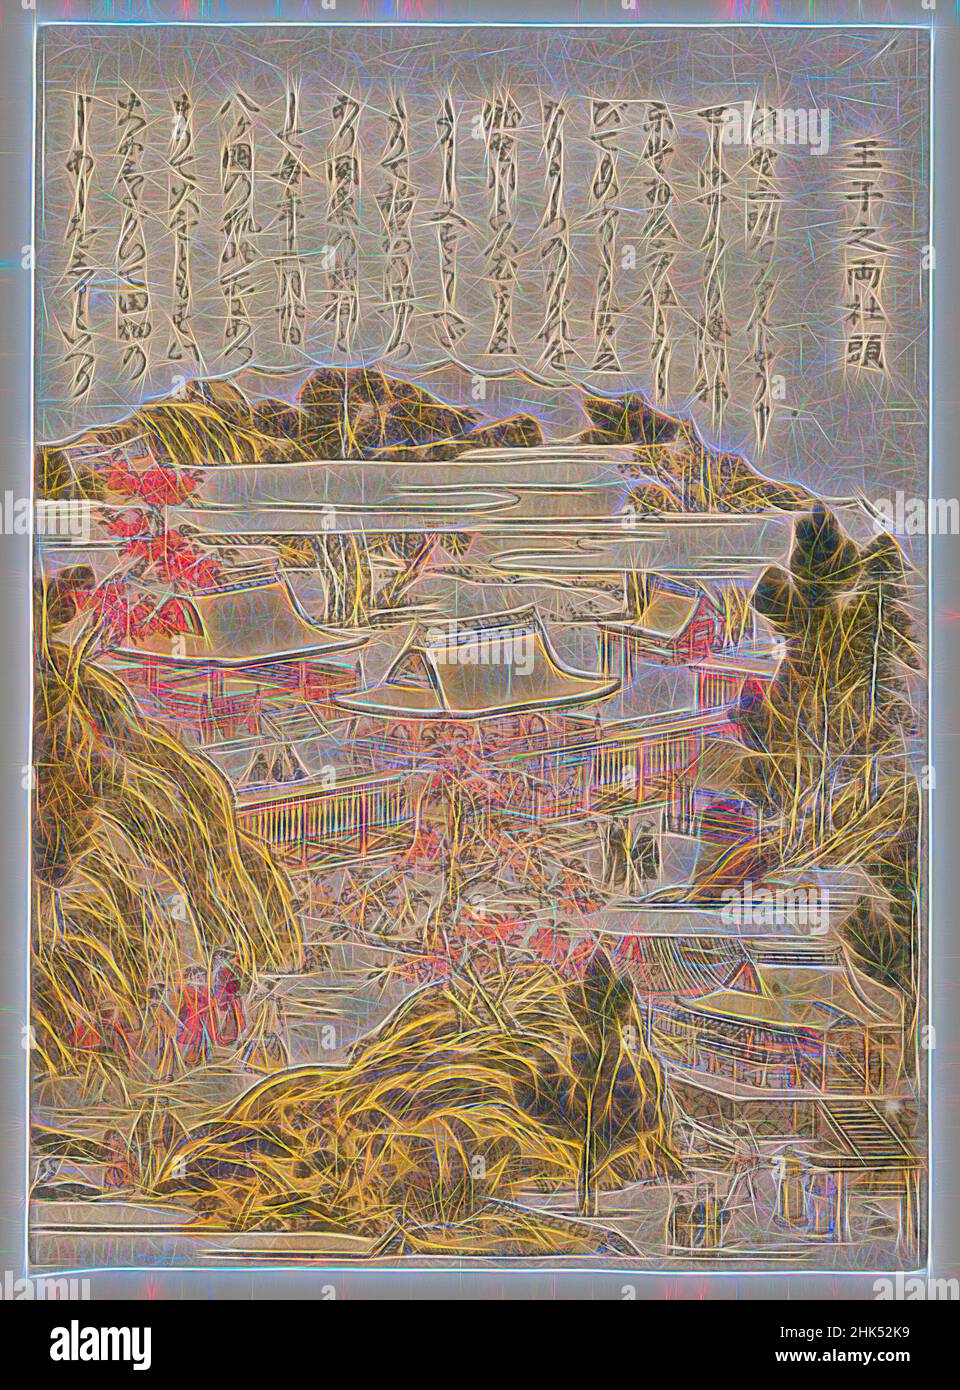 Inspiriert vom Dual Shrine in Oji, aus einer unbetitelten Serie berühmter Orte in Edo, Kitao Shigemasa, japanisch, 1739-1820, Farbholzschnitt auf Papier, Japan, ca. 1770, Edo-Periode, 8 1/2 x 6 1/8 Zoll, 21,6 x 15,5 cm, Alltag, edo-Periode, japan, Japanisch, meisho-e, Menschen, Stadt, Dorf, neu erfunden von Artotop. Klassische Kunst neu erfunden mit einem modernen Twist. Design von warmen fröhlichen Leuchten der Helligkeit und Lichtstrahl Strahlkraft. Fotografie inspiriert von Surrealismus und Futurismus, umarmt dynamische Energie der modernen Technologie, Bewegung, Geschwindigkeit und Kultur zu revolutionieren Stockfoto